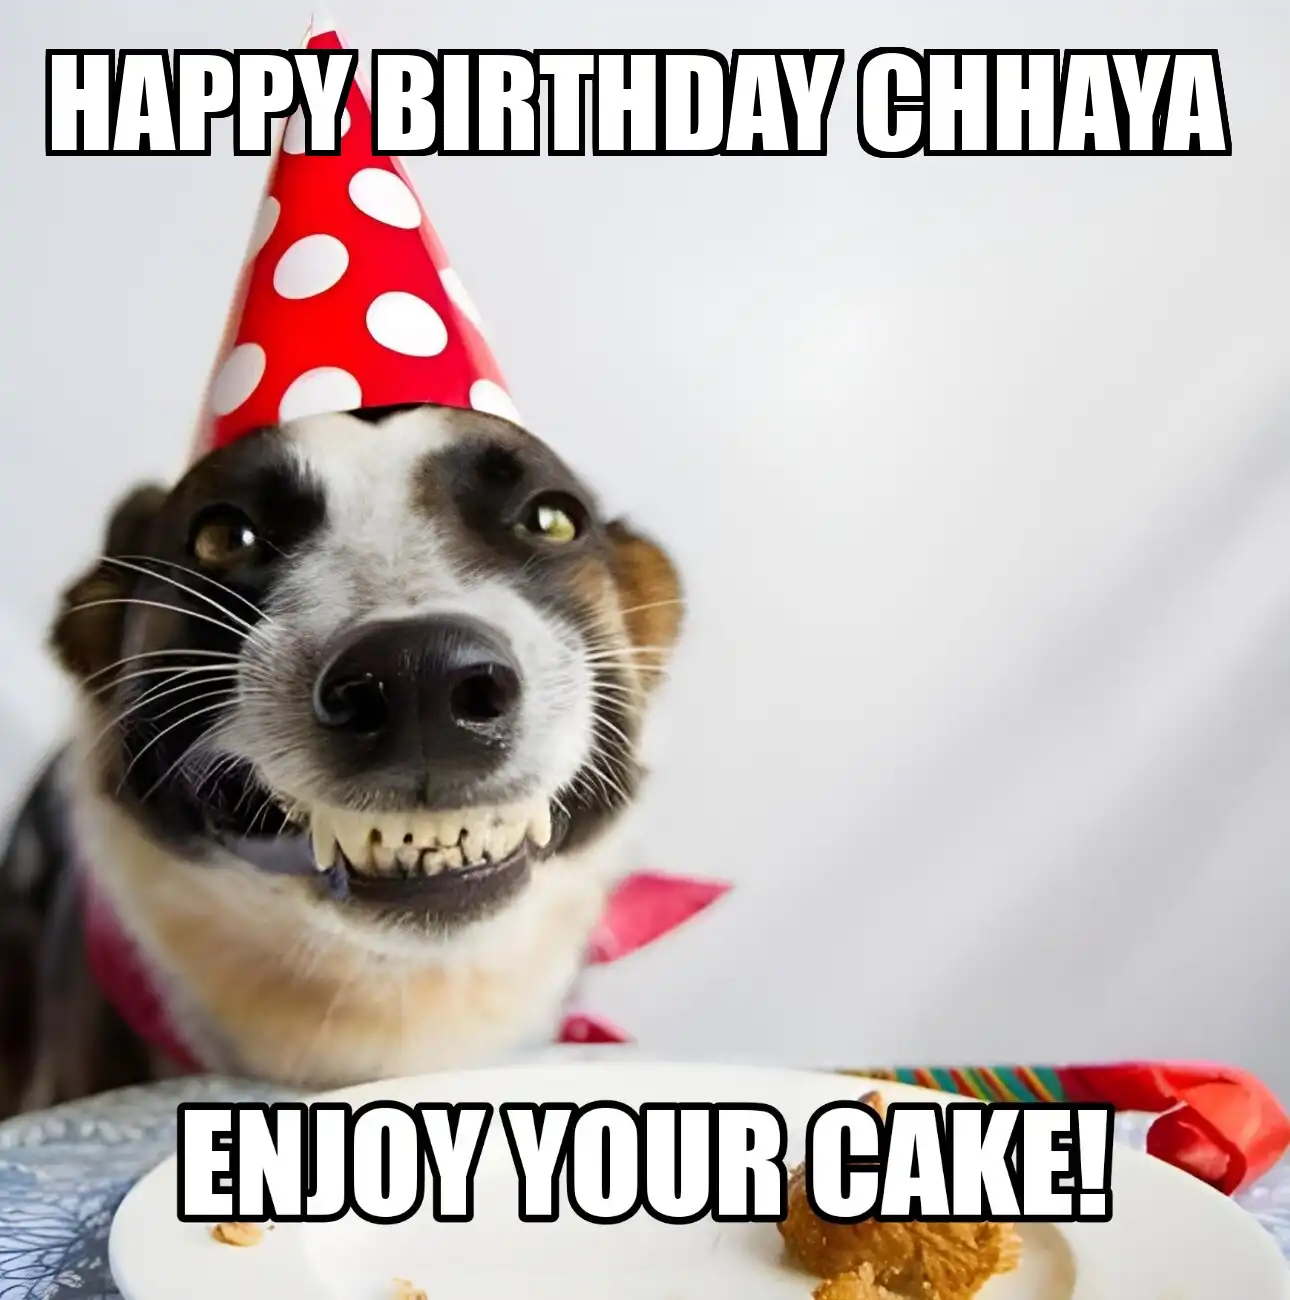 Happy Birthday Chhaya Enjoy Your Cake Dog Meme